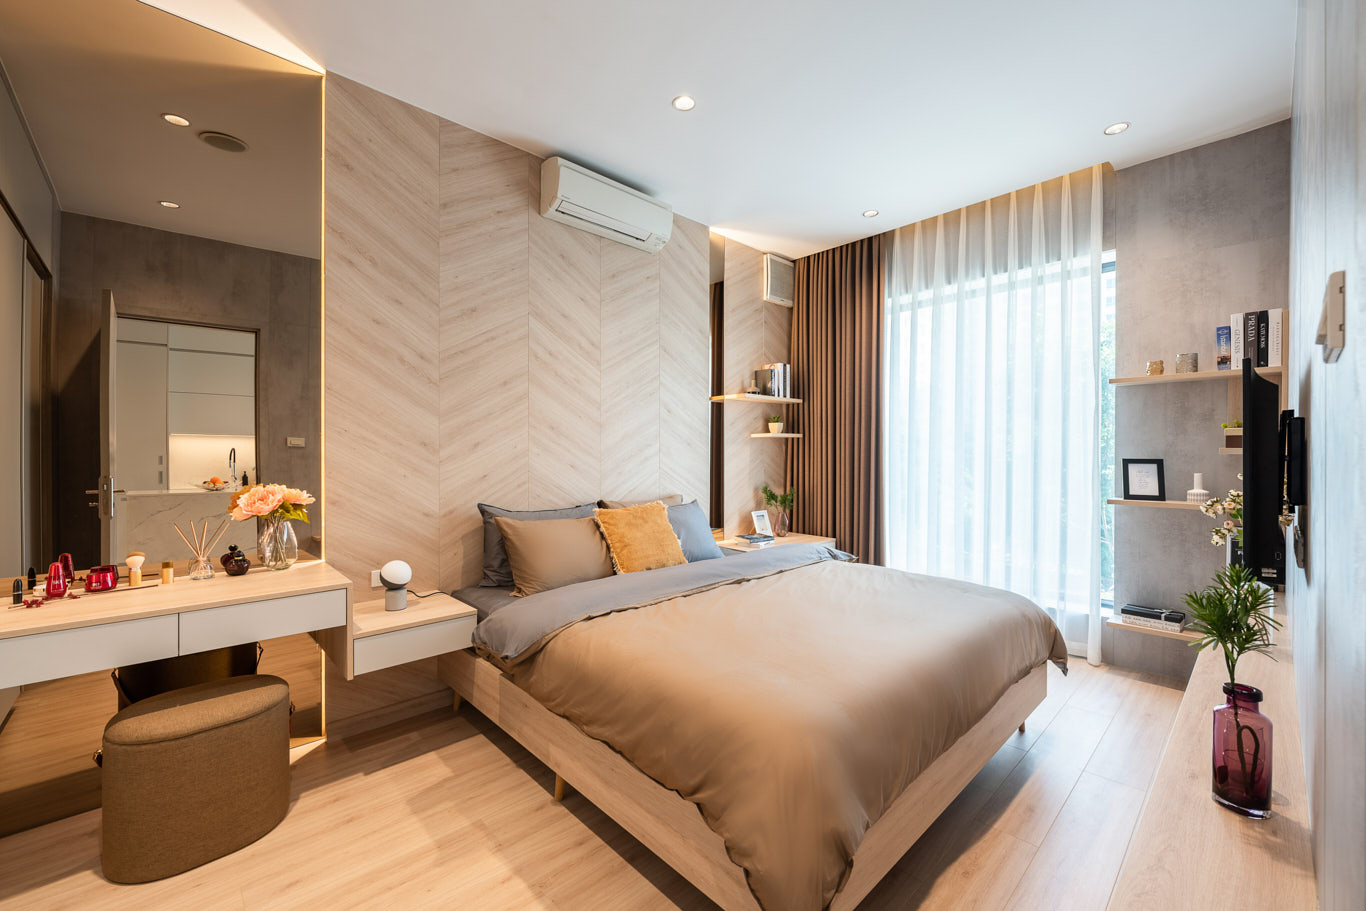 Mẫu thiết kế phòng ngủ hiện đại 25 - 30 m2 